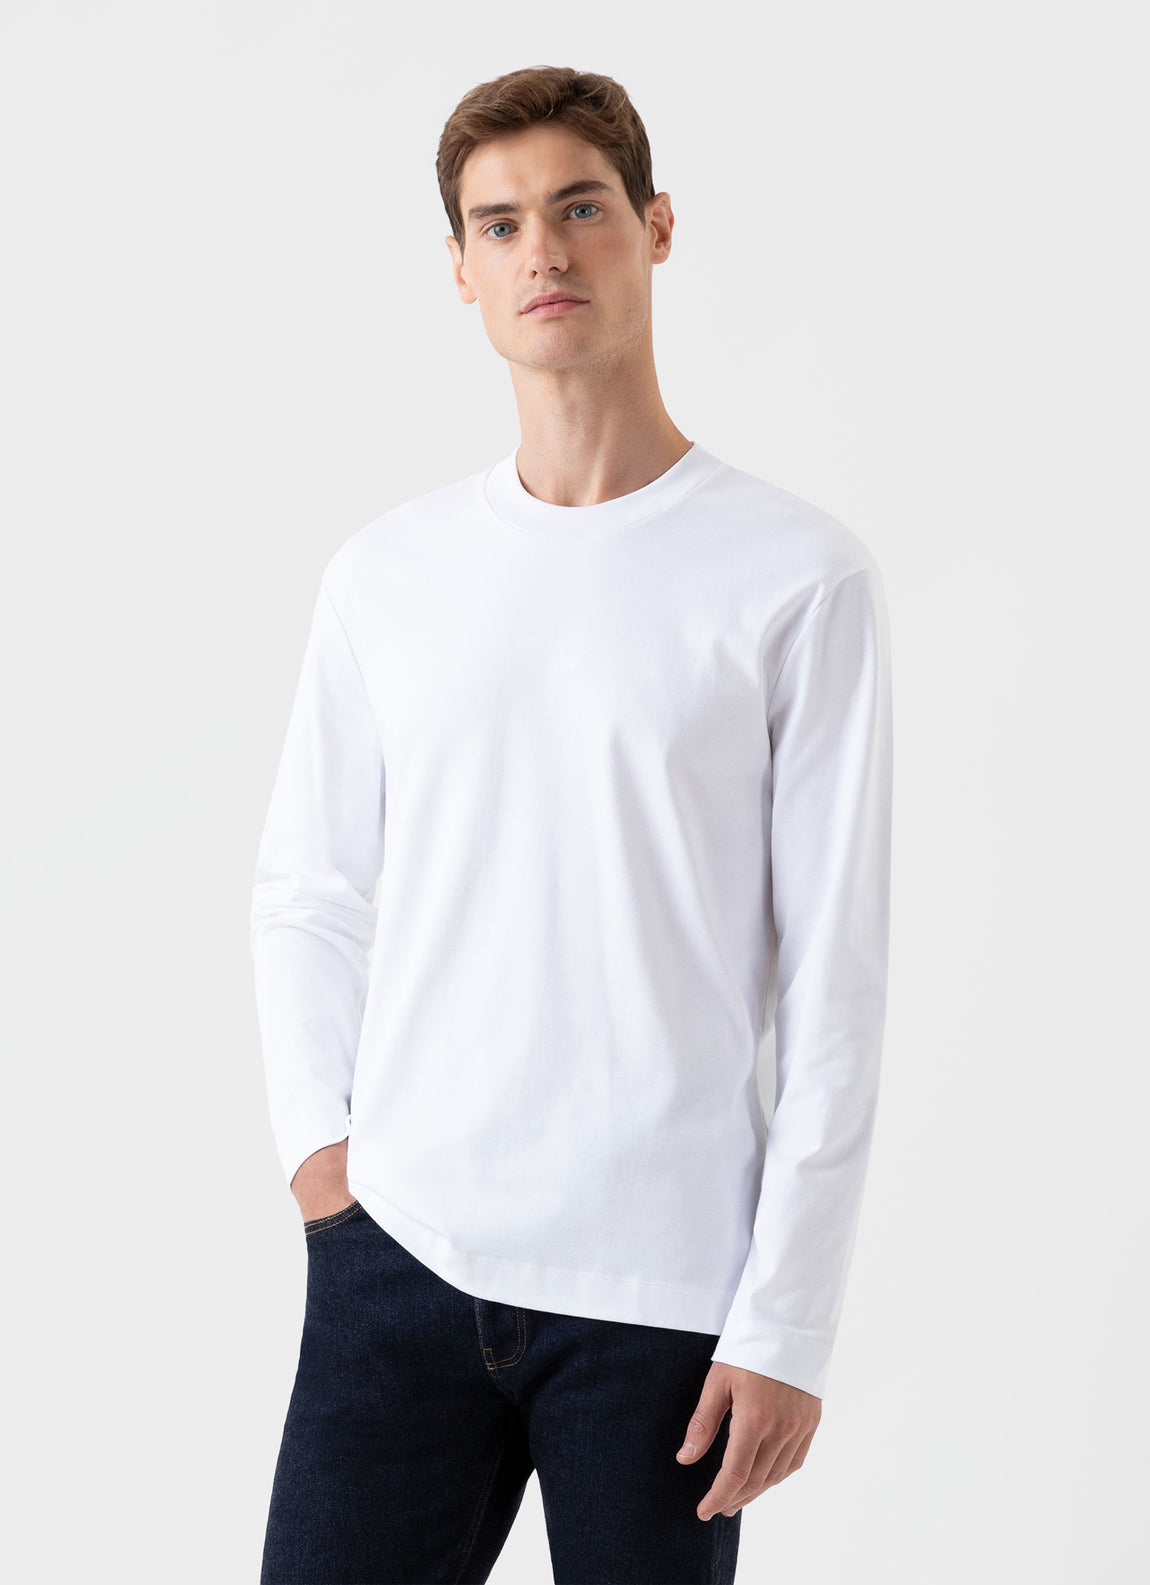 Men's Carbon Brushed Long Sleeve T-shirt in White | Sunspel